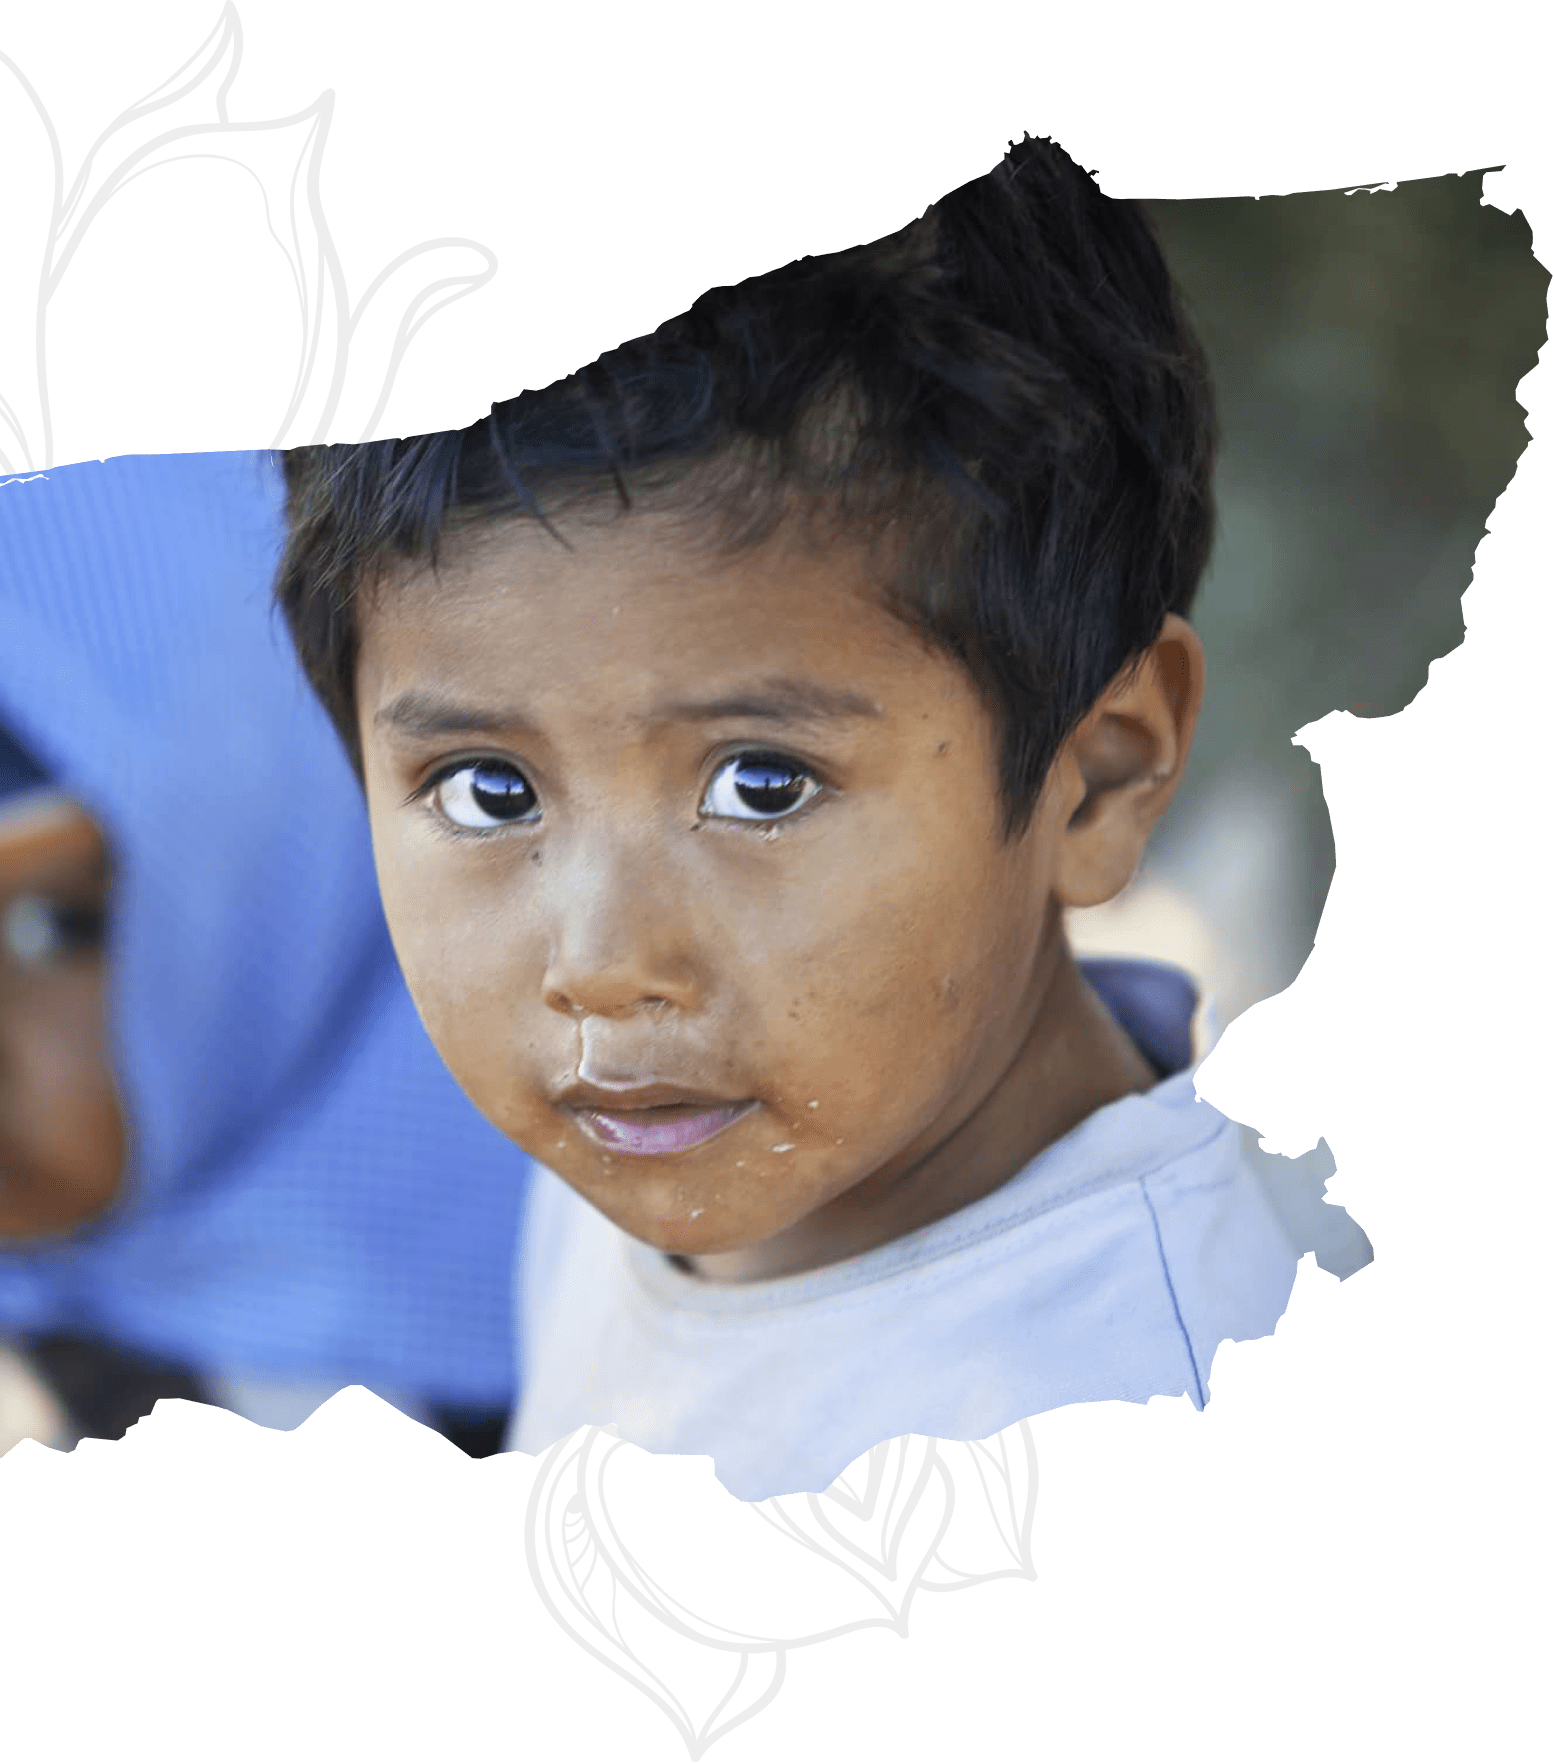 Estart Foundation - El Salvador community projects